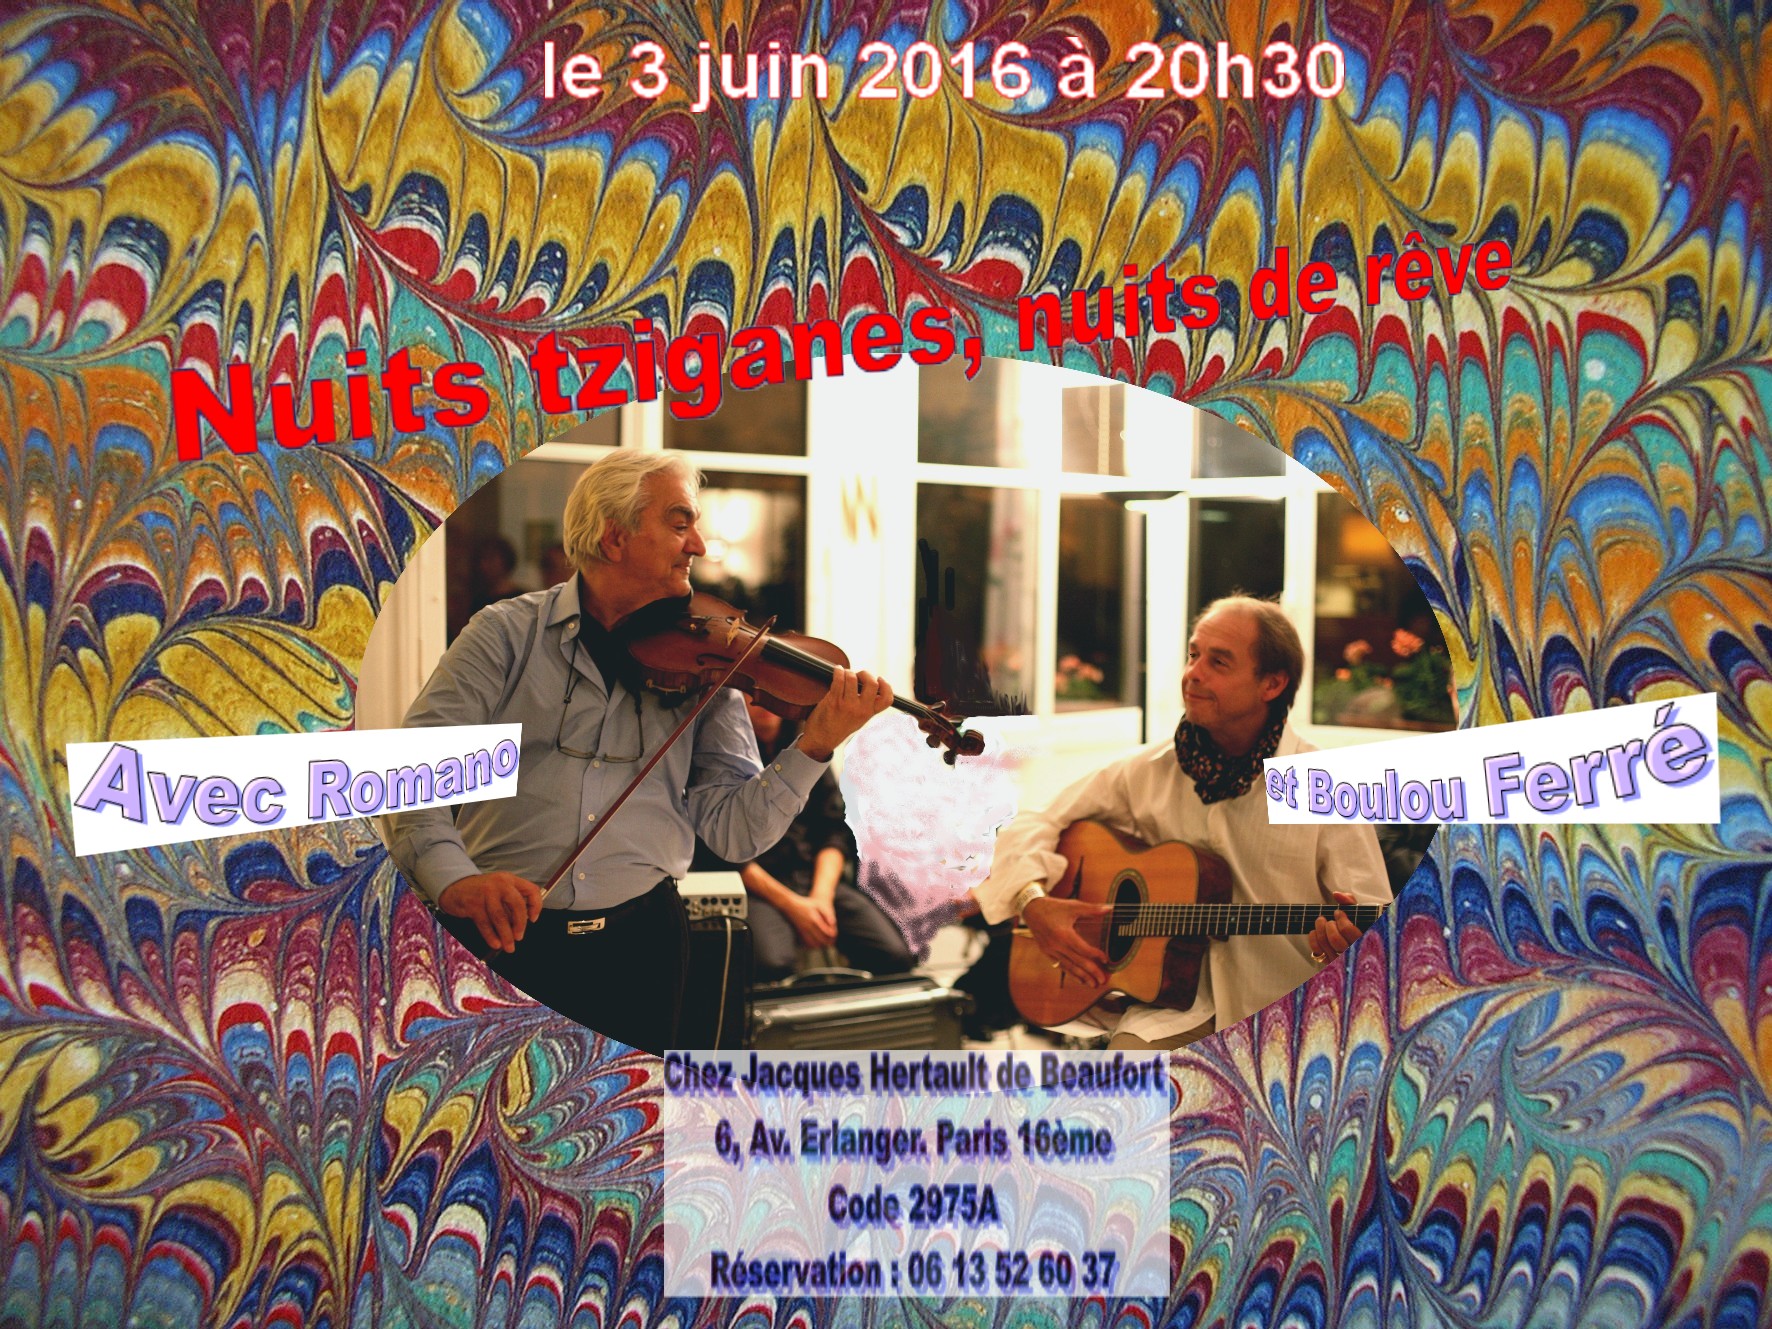 Illustration. Paris. Faites entrer las musiciens. Nuits tsiganes, nuits de rêve avec Romano et Boulou Ferré. 2016-06-03.